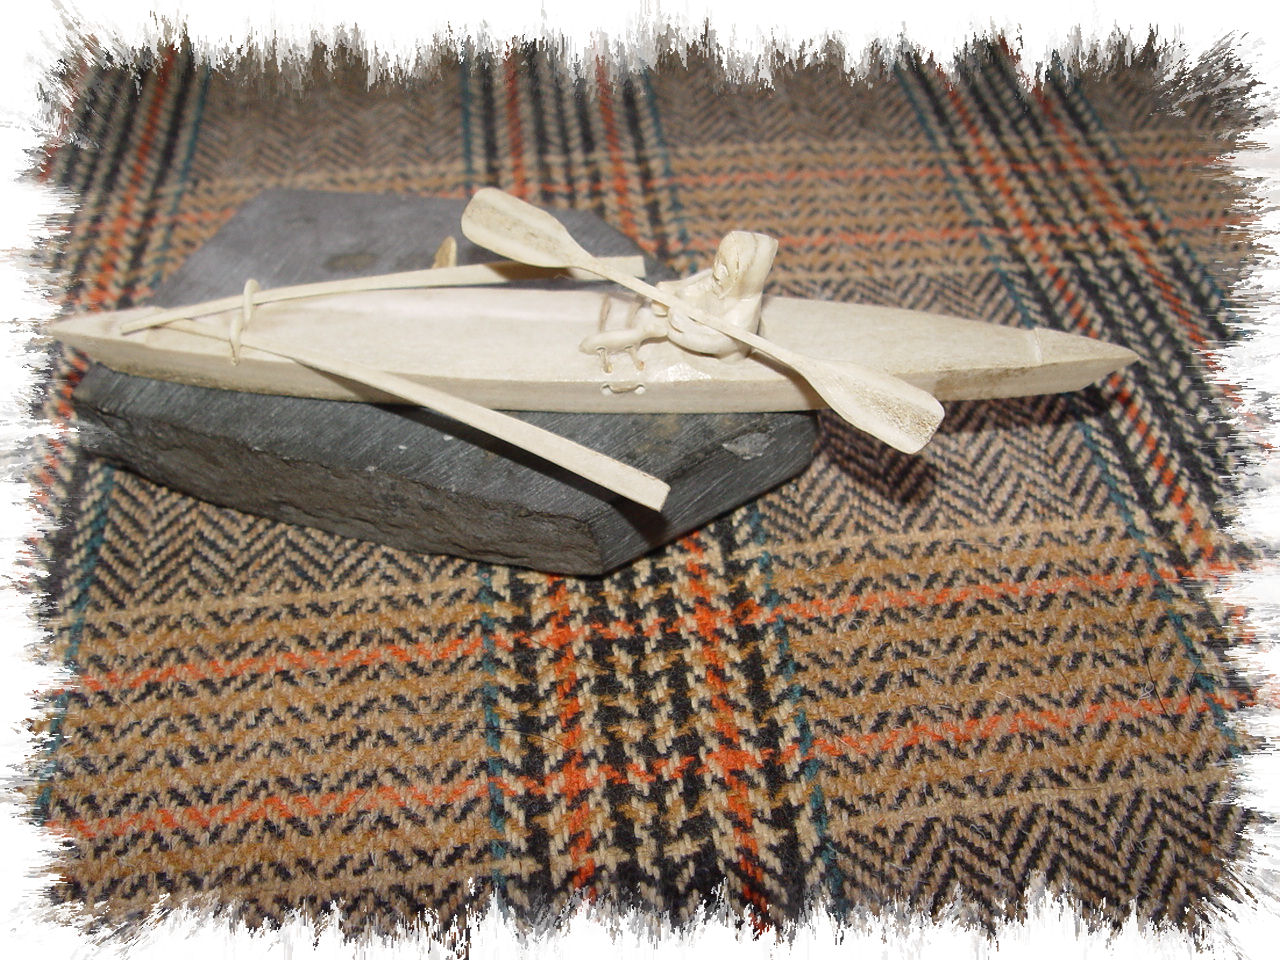 Inuit Cambridge
                                          Bay Carved Native Eskimo In
                                          Canoe Kayak; Spears, Signed